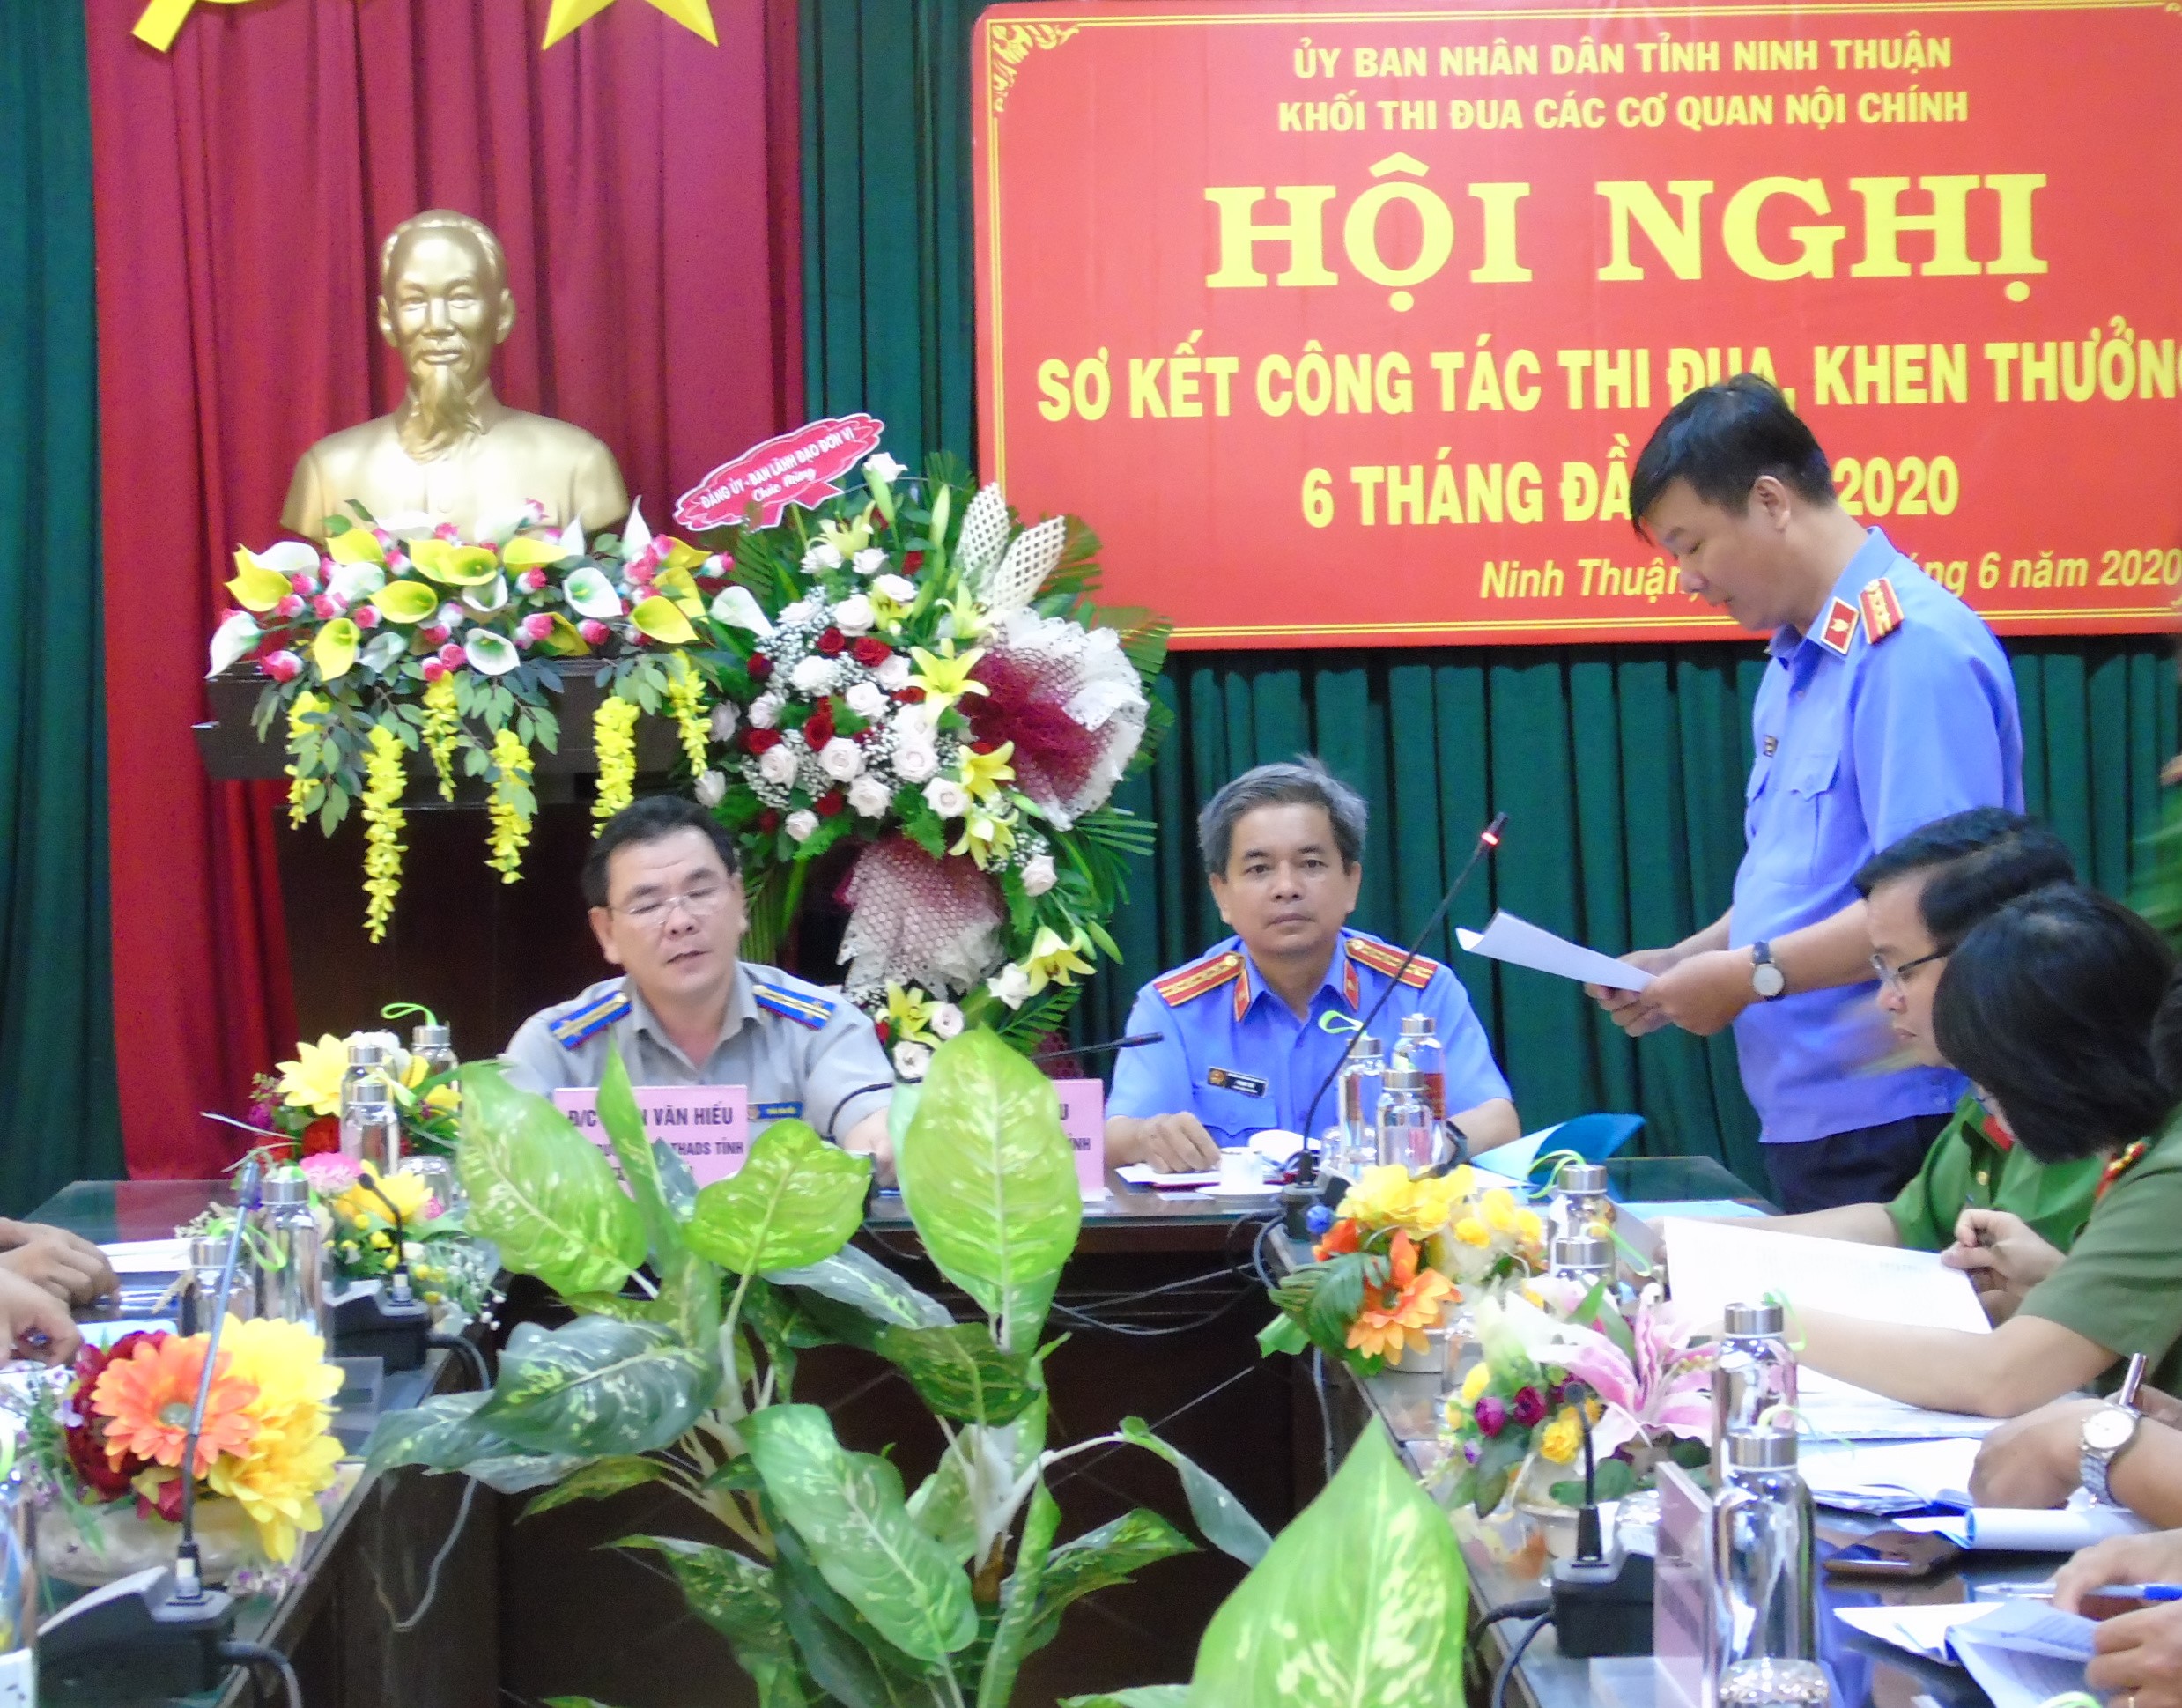 Cục Thi hành án dân sự tỉnh Ninh Thuận tổ chức hội nghị sơ kết công tác thi đua, khen thưởng 06 tháng đầu năm 2020 của Khối thi đua các cơ quan Nội chính tỉnh